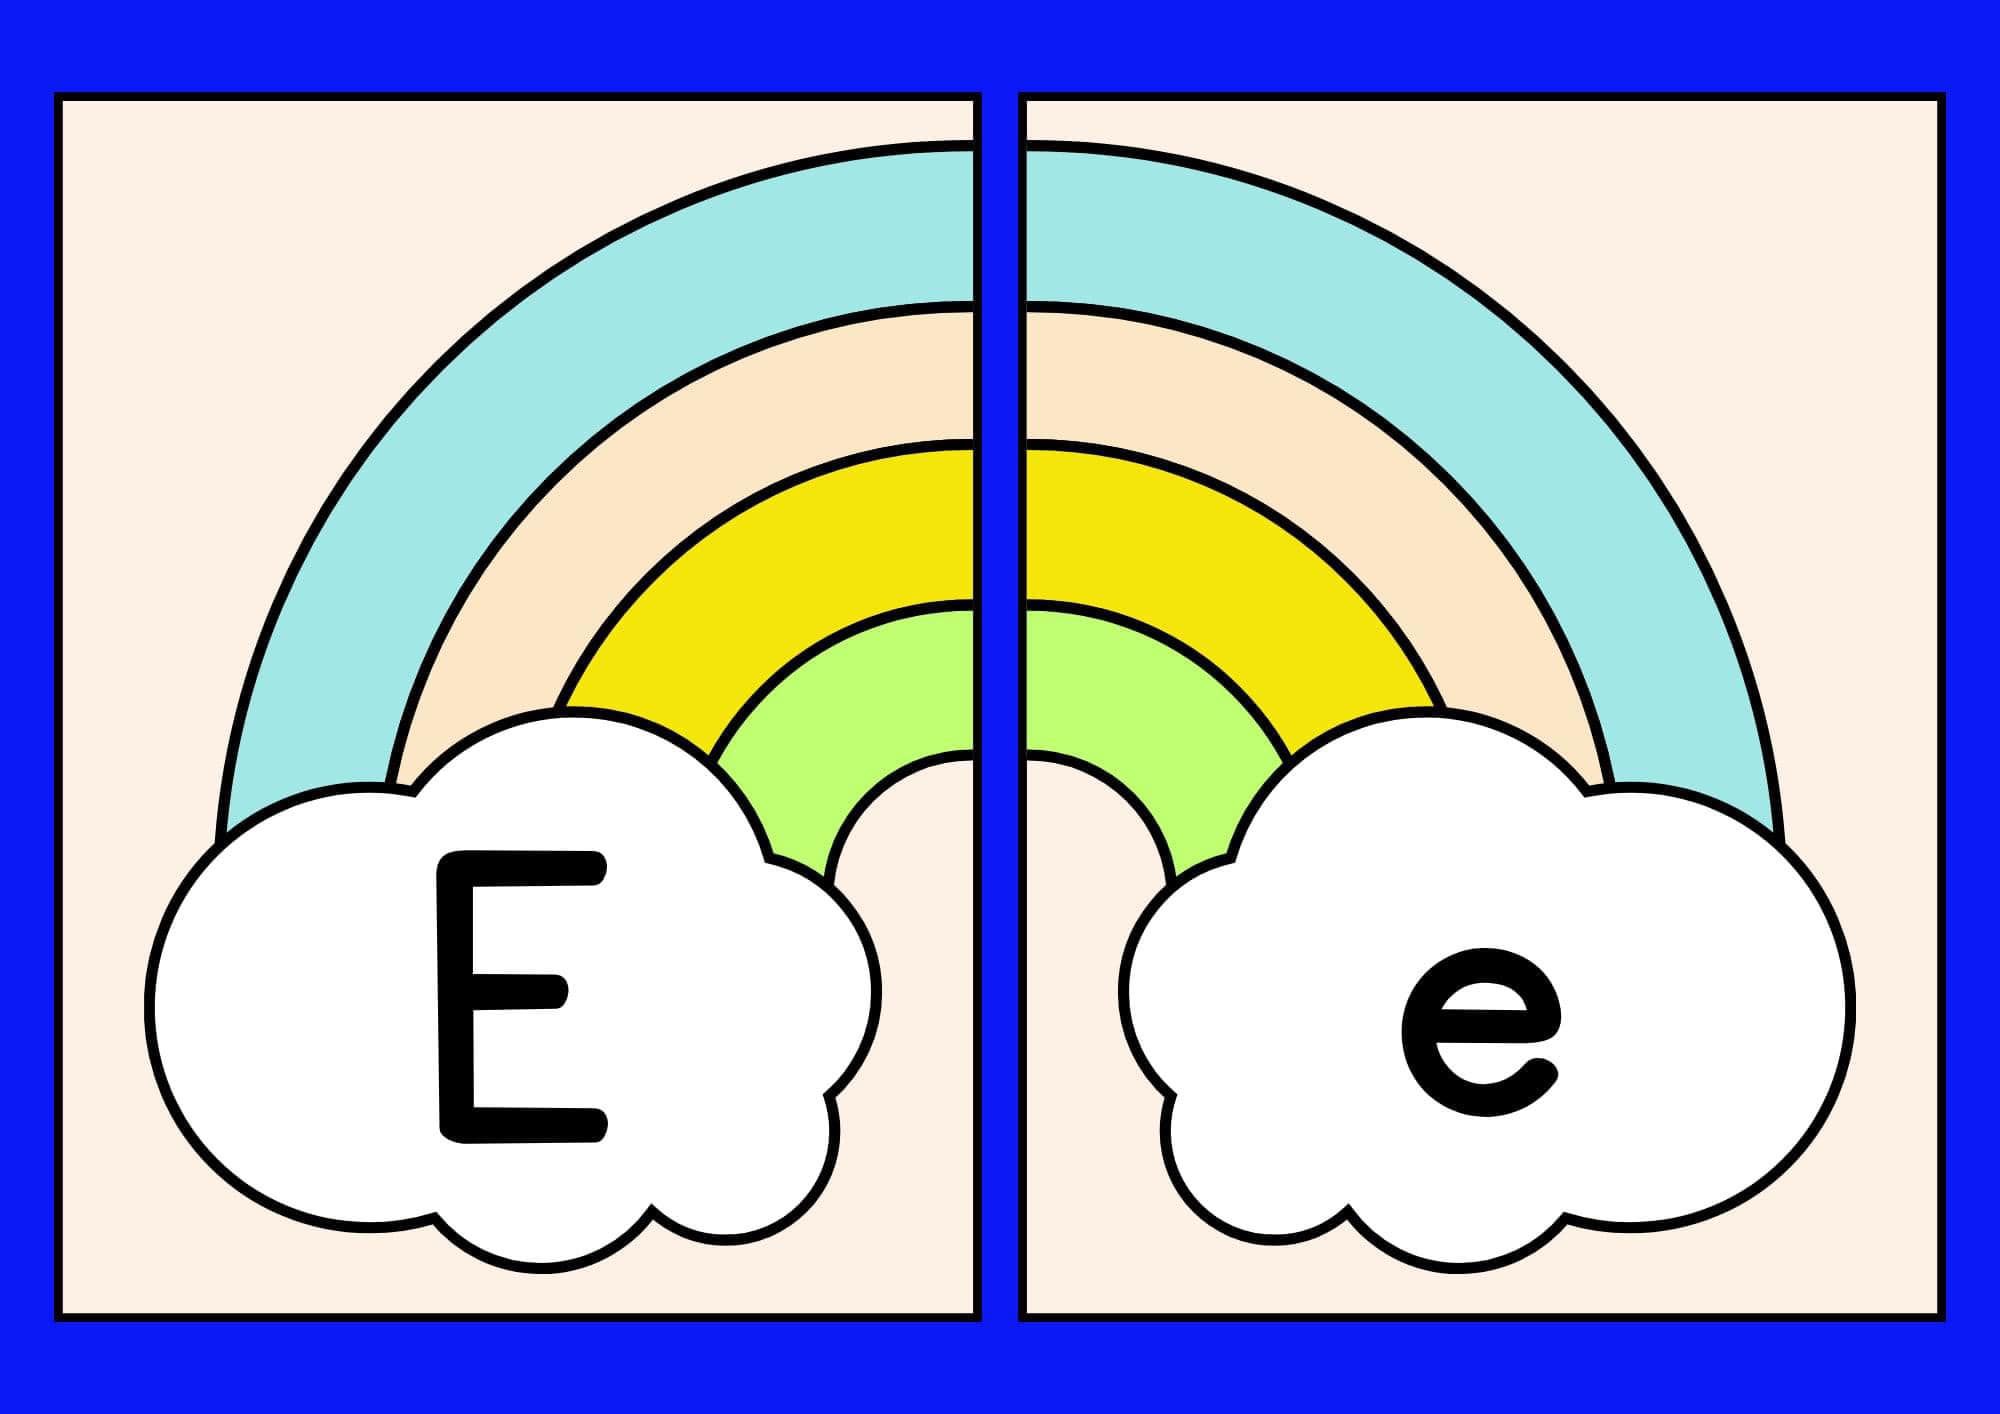 Alfabeto arco íris Ee